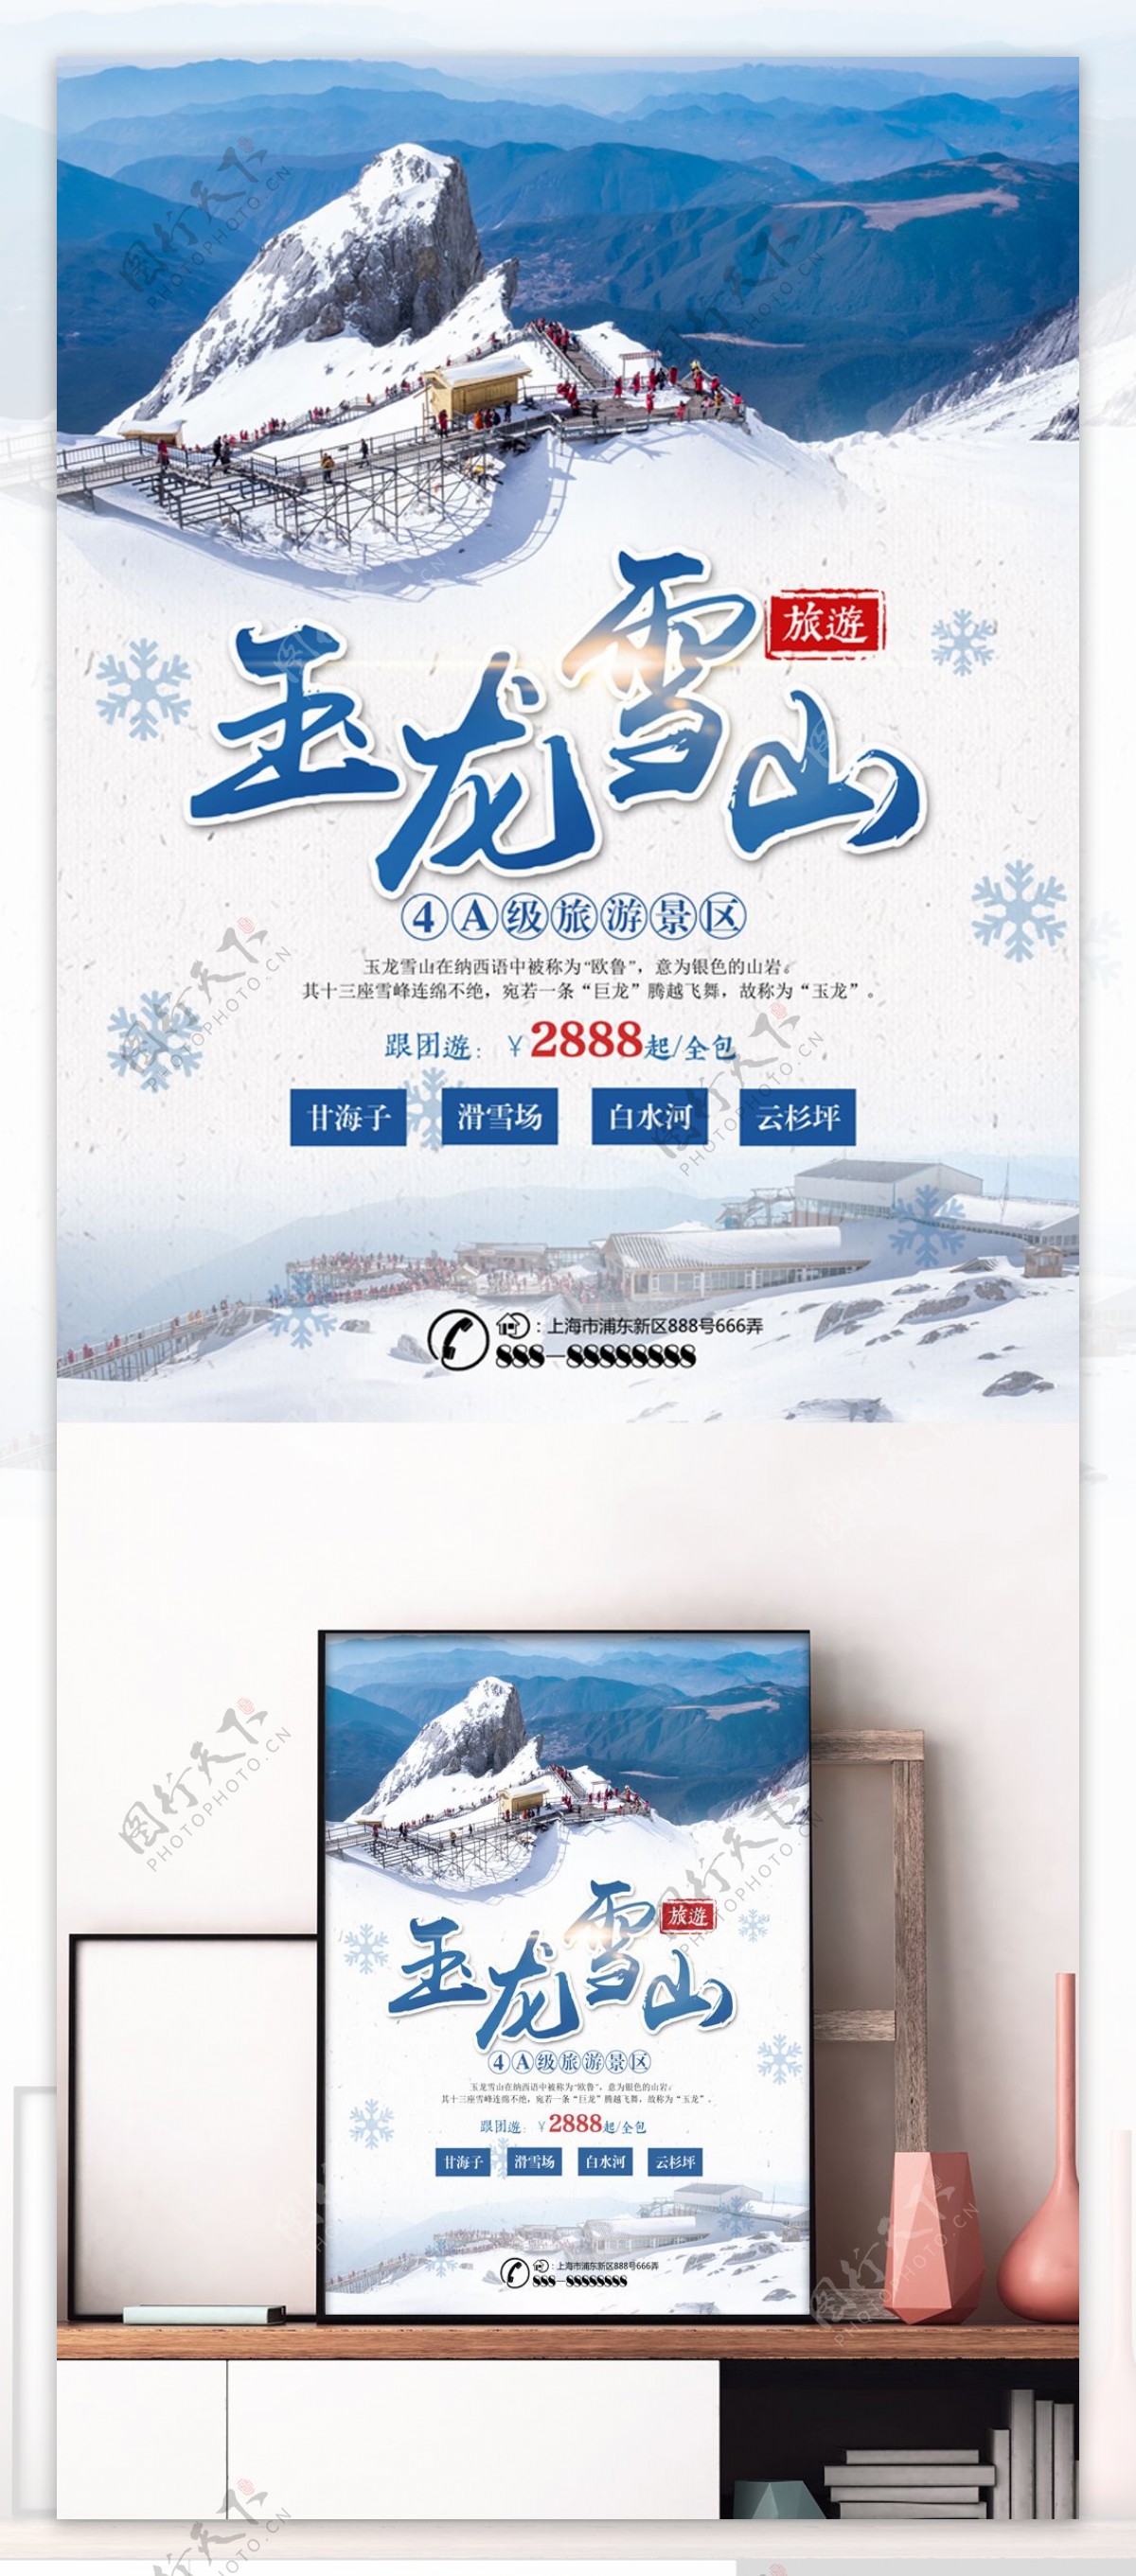 蓝色简约玉龙雪山旅游美景旅行社旅游海报